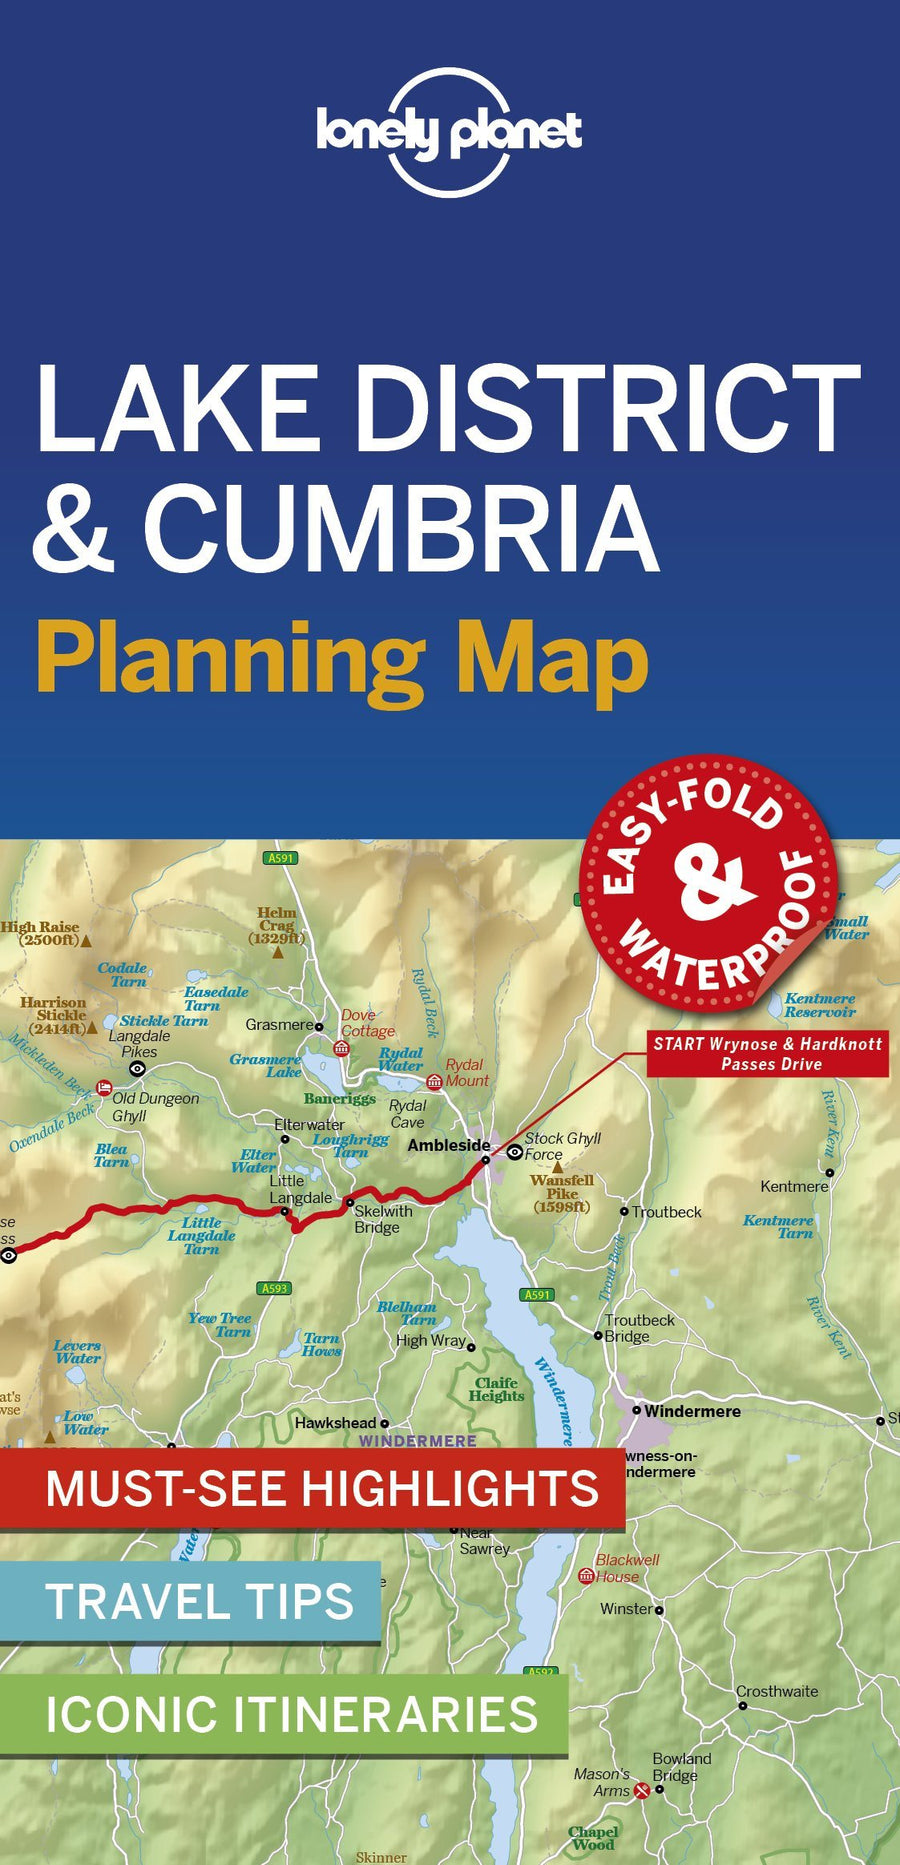 Carte de voyage (en anglais) - Lake District & Cumbria | Lonely Planet carte pliée Lonely Planet 